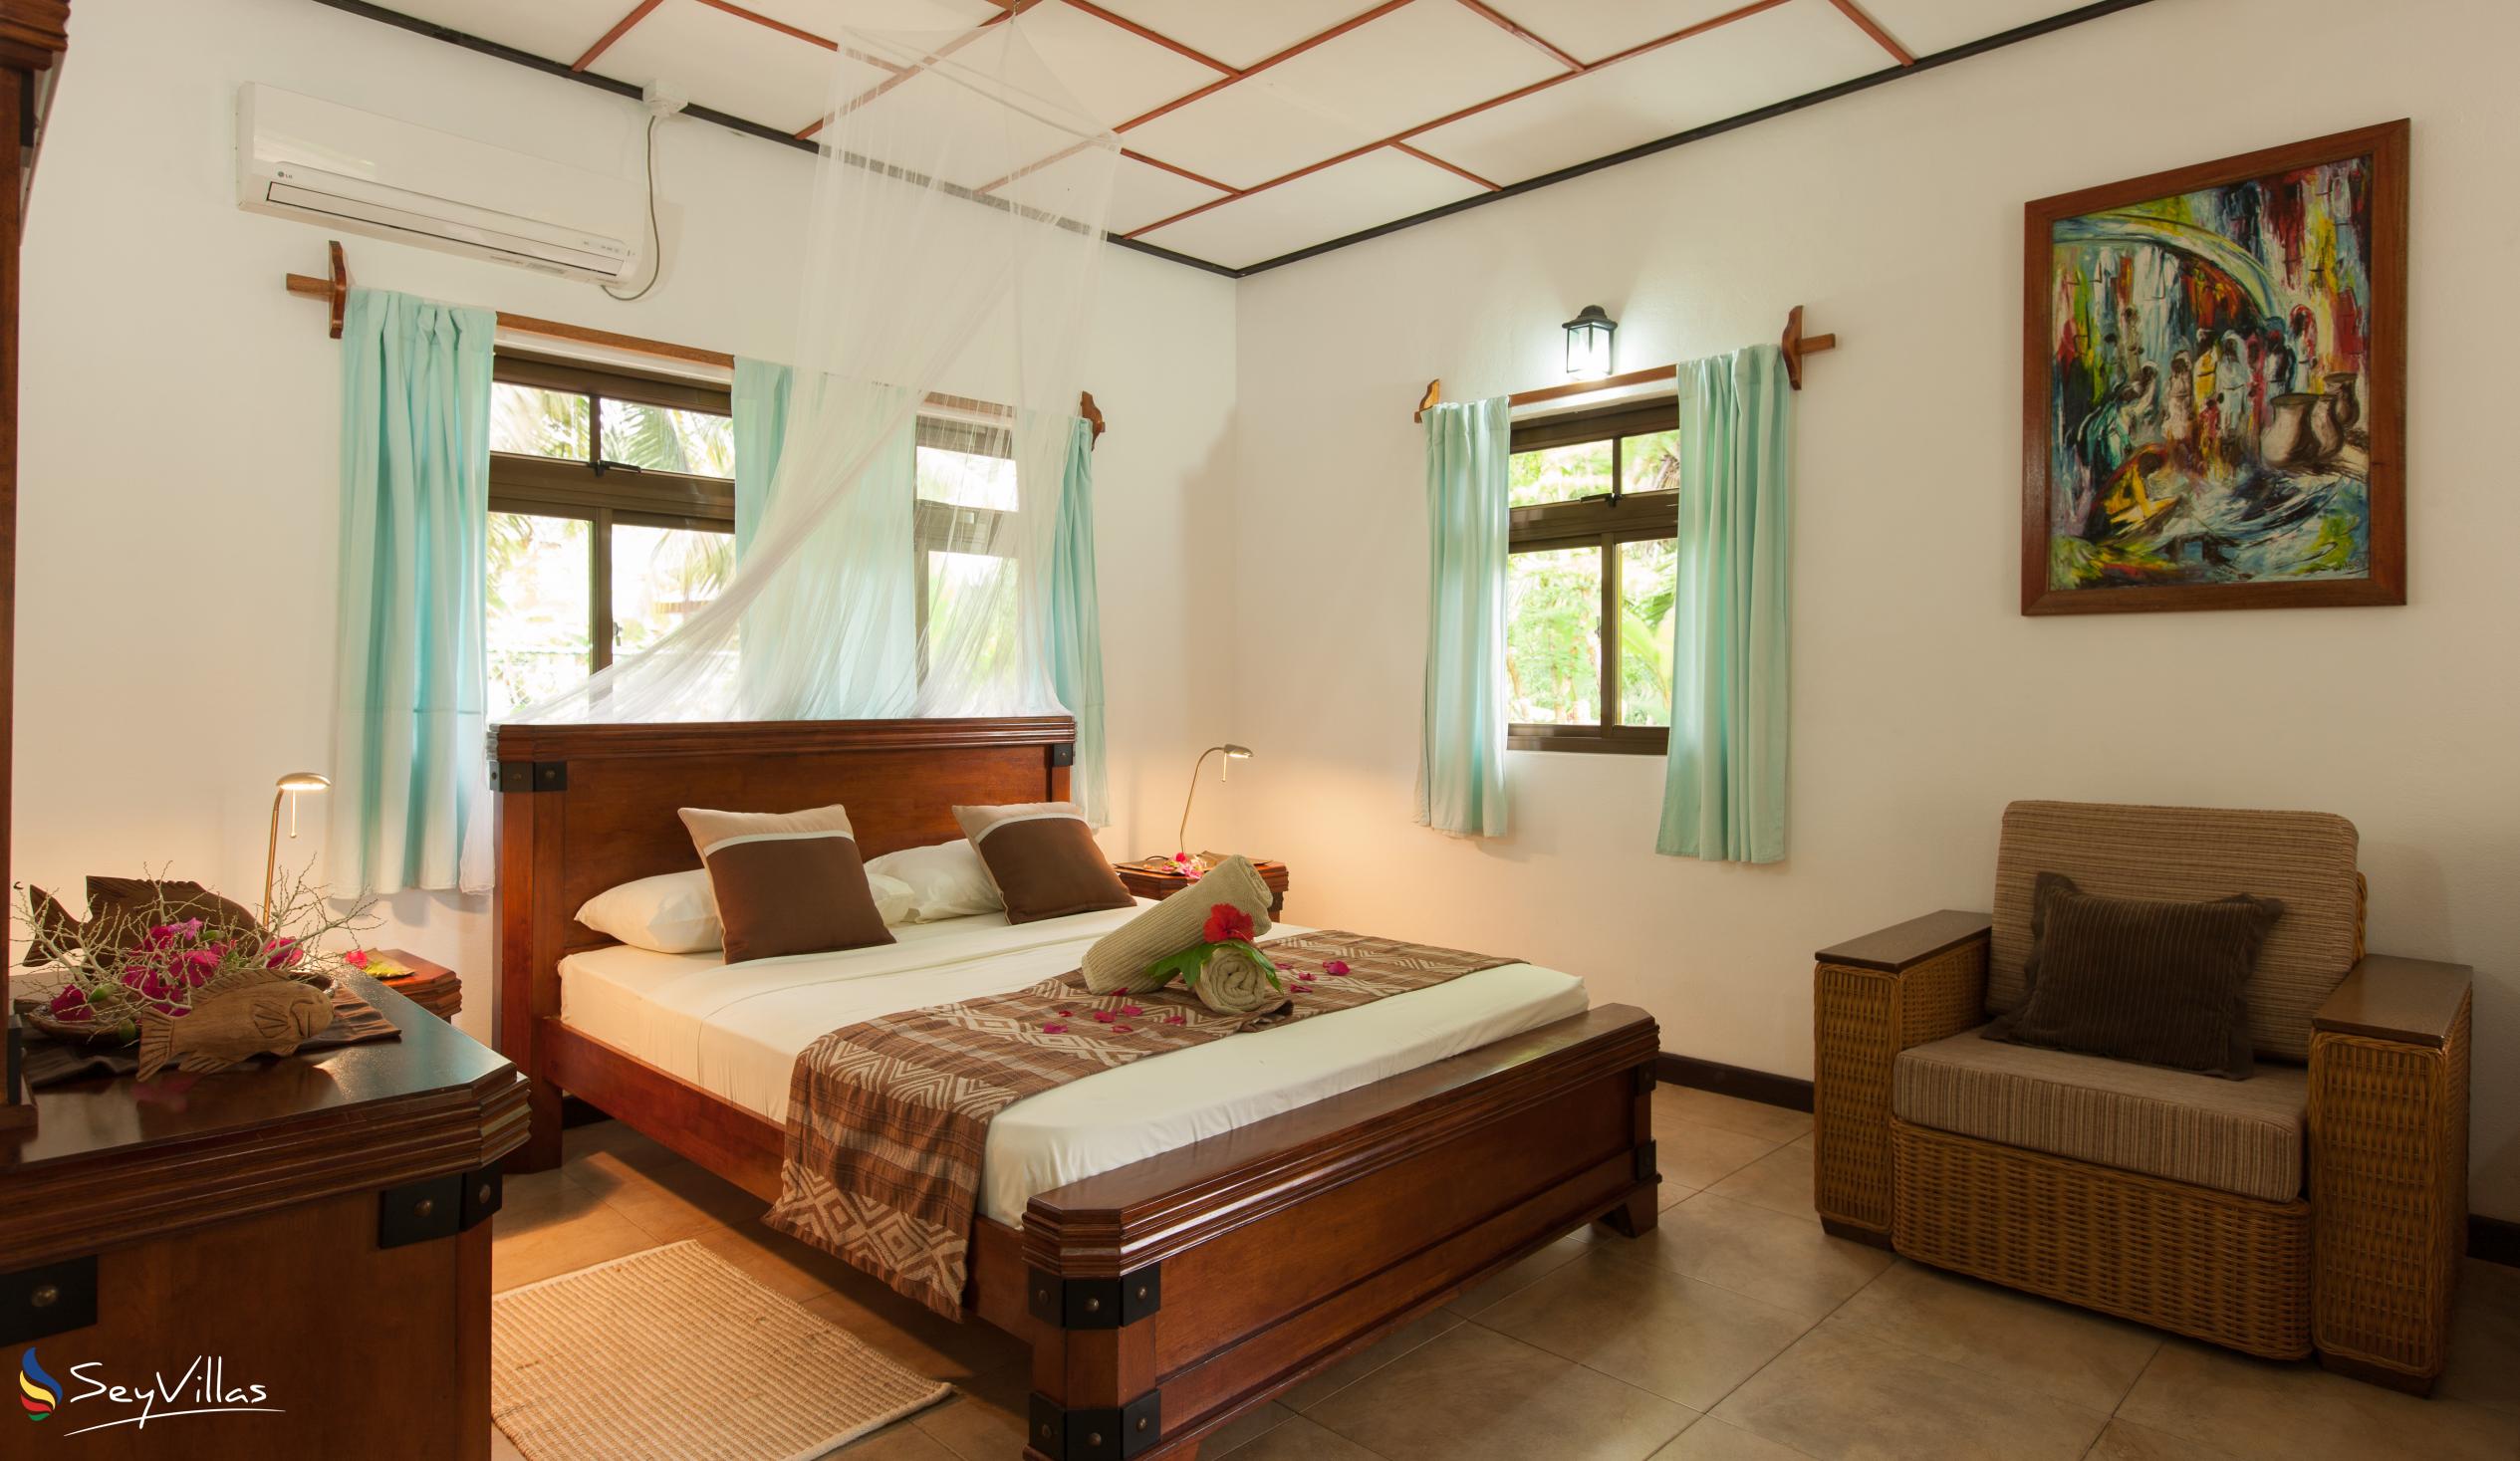 Photo 101: Domaine Les Rochers - 2-Bedroom Bungalow Palmier - La Digue (Seychelles)